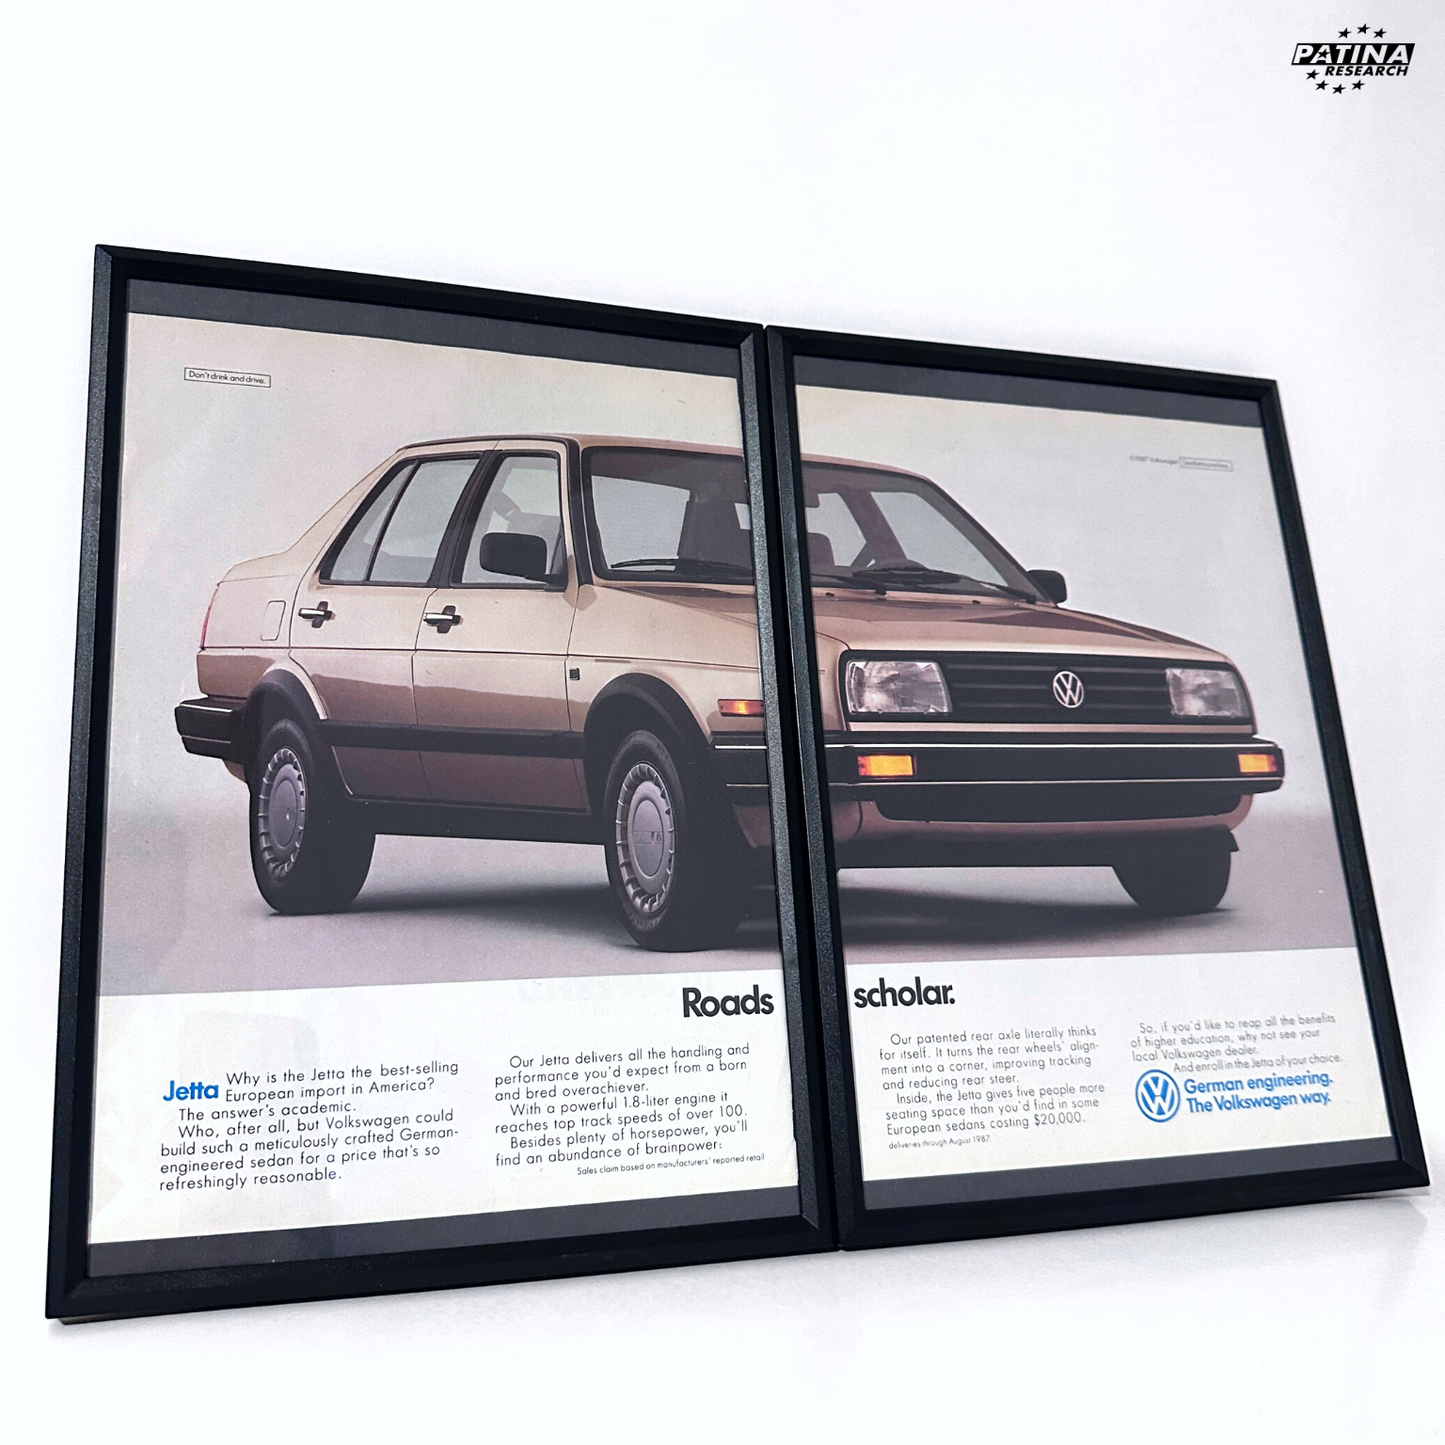 Volkswagen Jetta road scholars framed ad